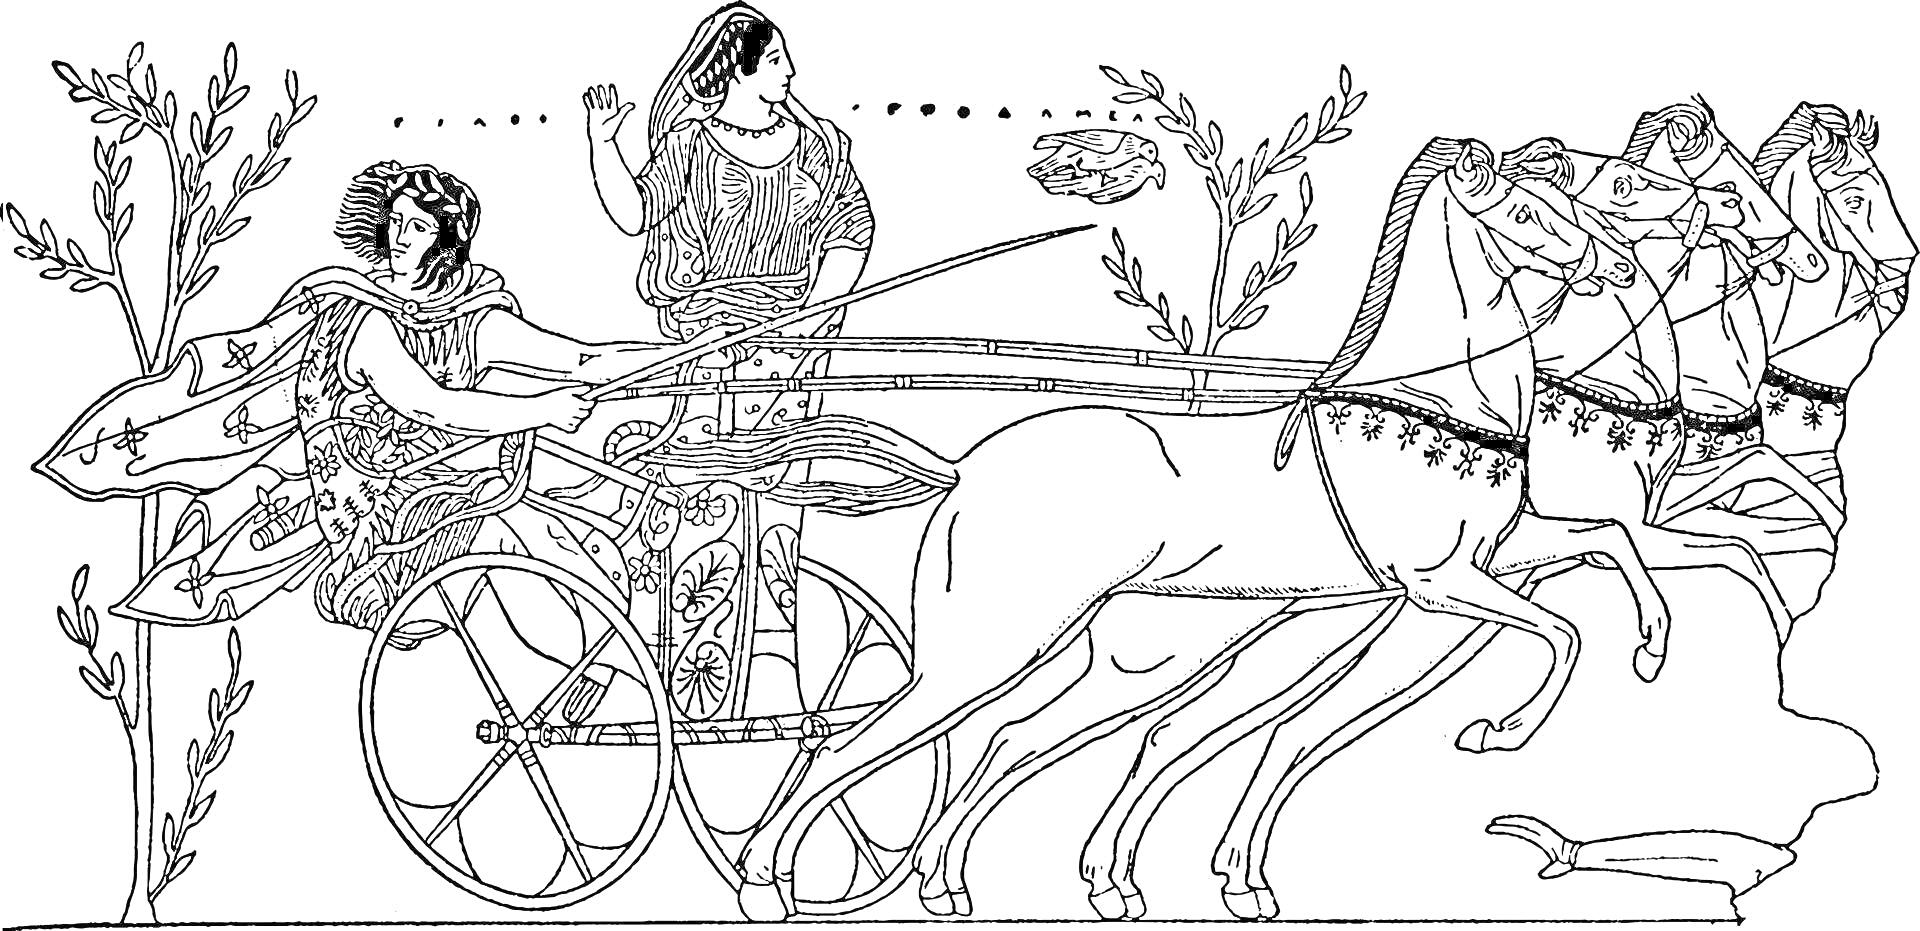 Раскраска Сцена состязаний на колесницах в Древней Греции, двое людей на колеснице, запряженной тремя лошадьми, с растительностью на заднем плане